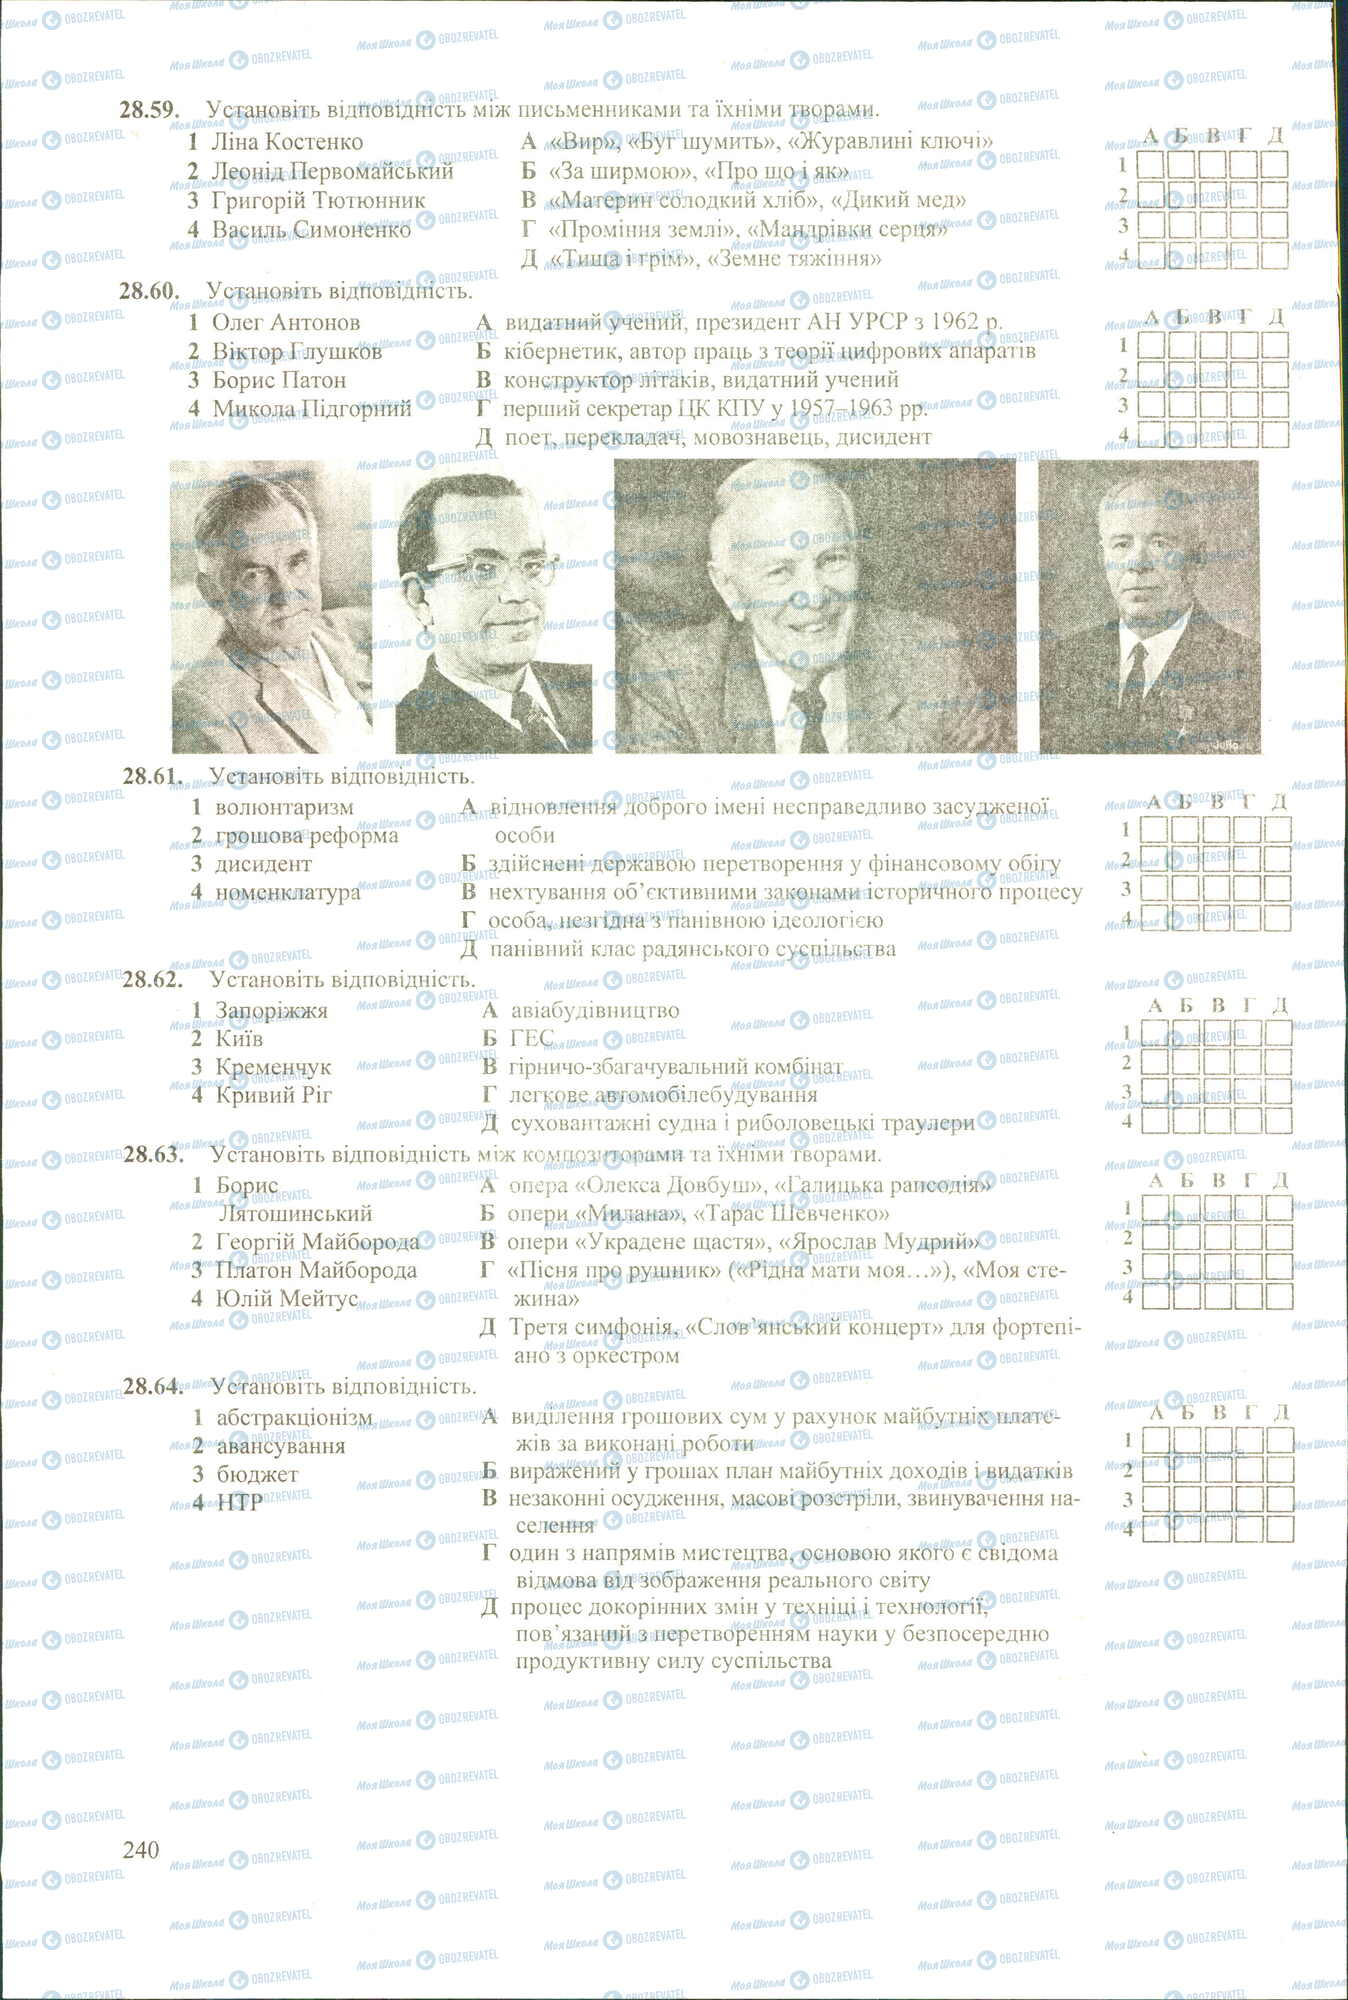 ЗНО История Украины 11 класс страница 59-64